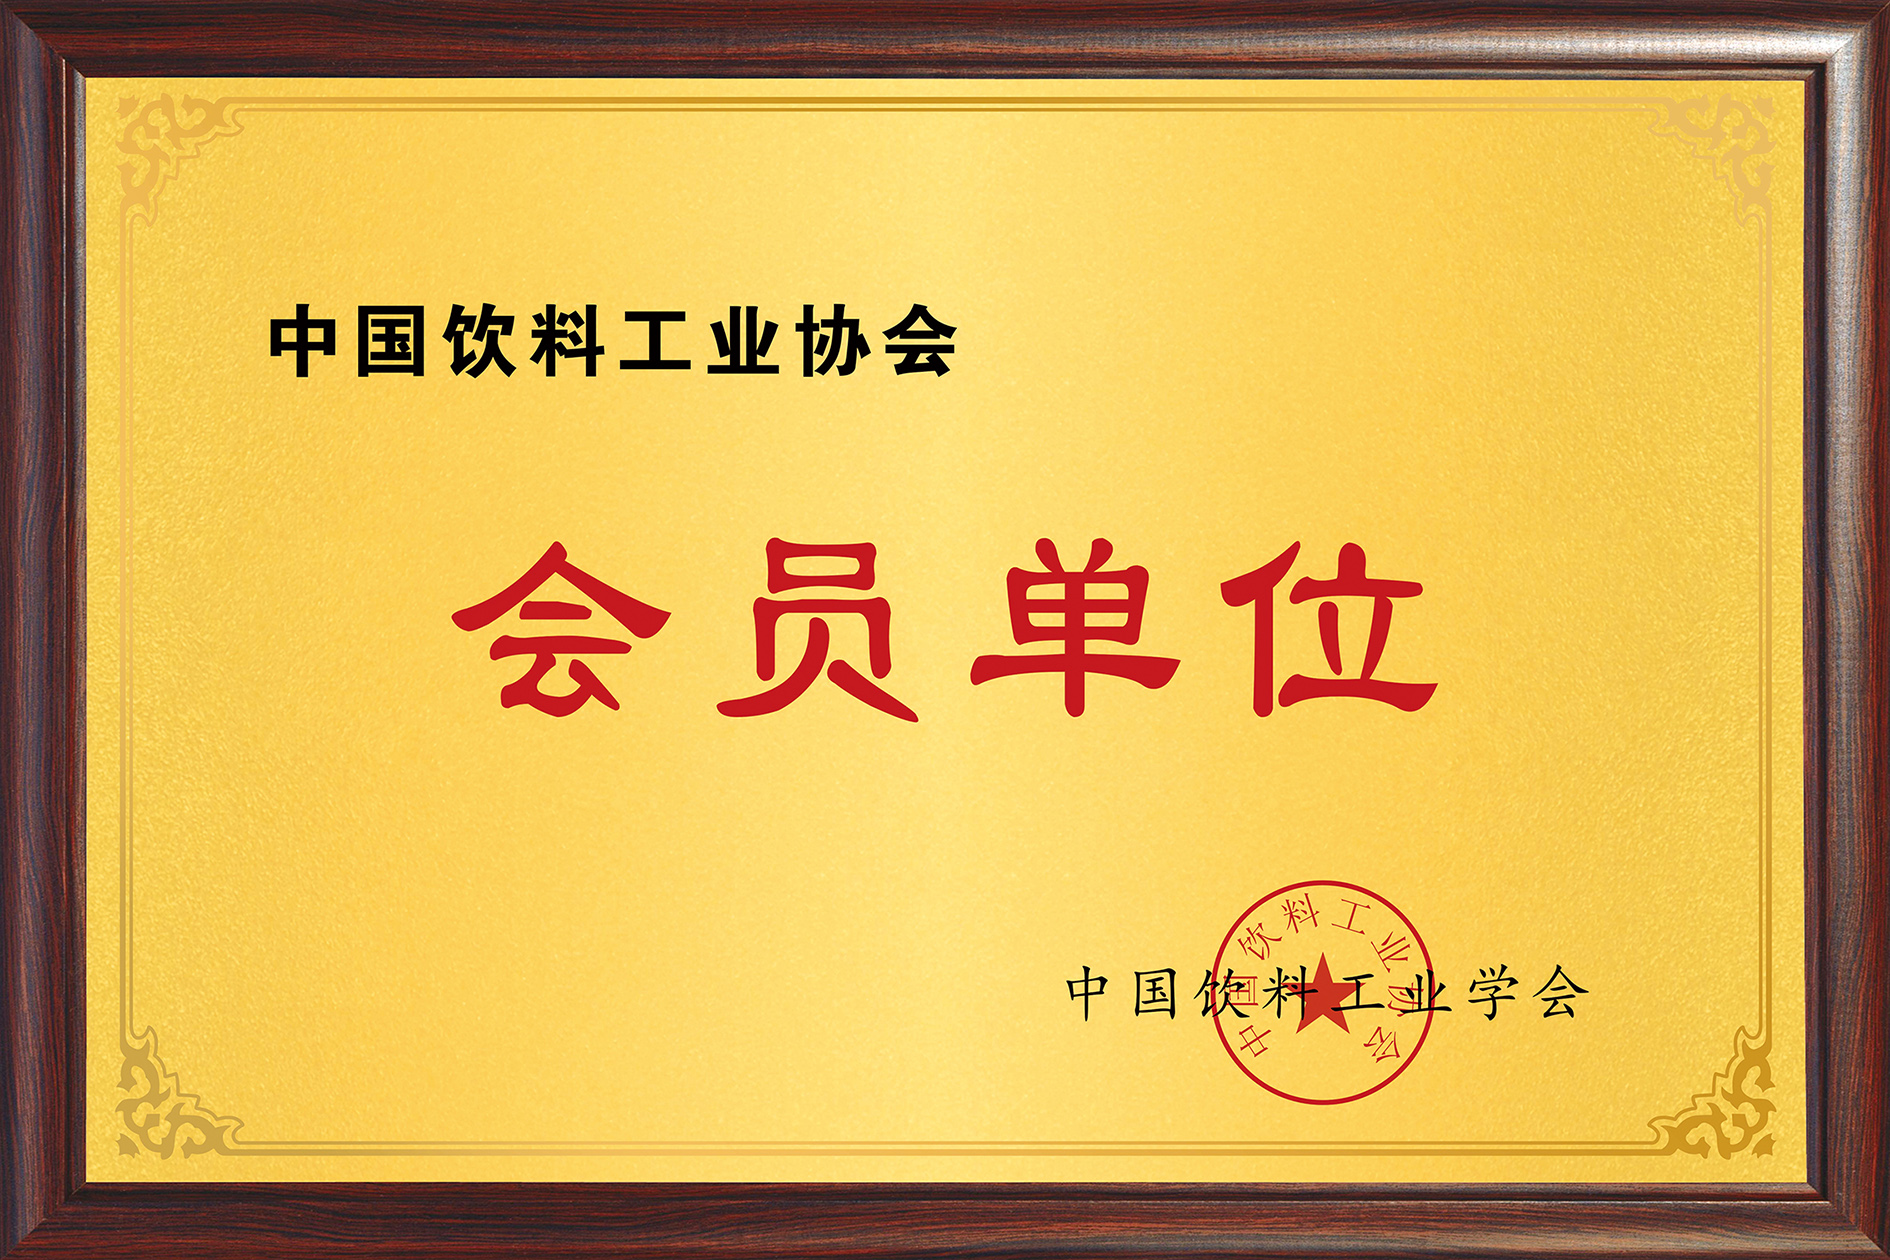 中国饮料工业协会会员单位